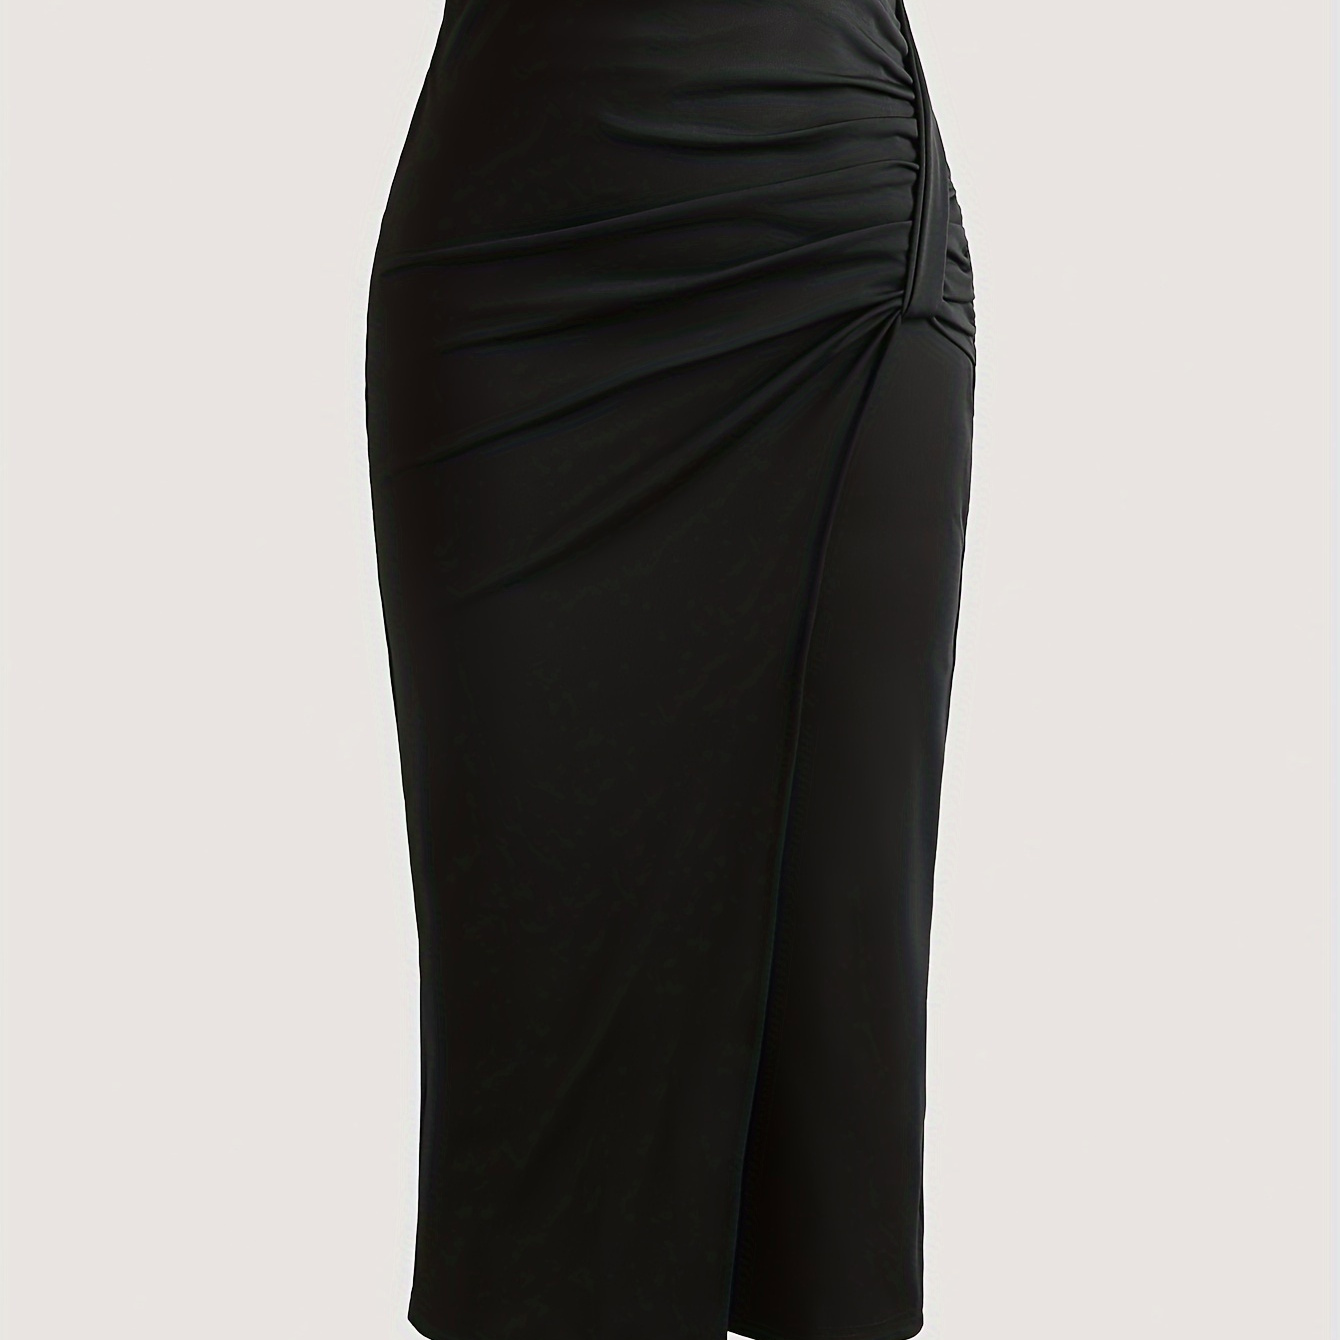 

Solid Color Knot Front Skirt, Elegant High Waist Slim Skirt For Office & Work, Women's Clothing